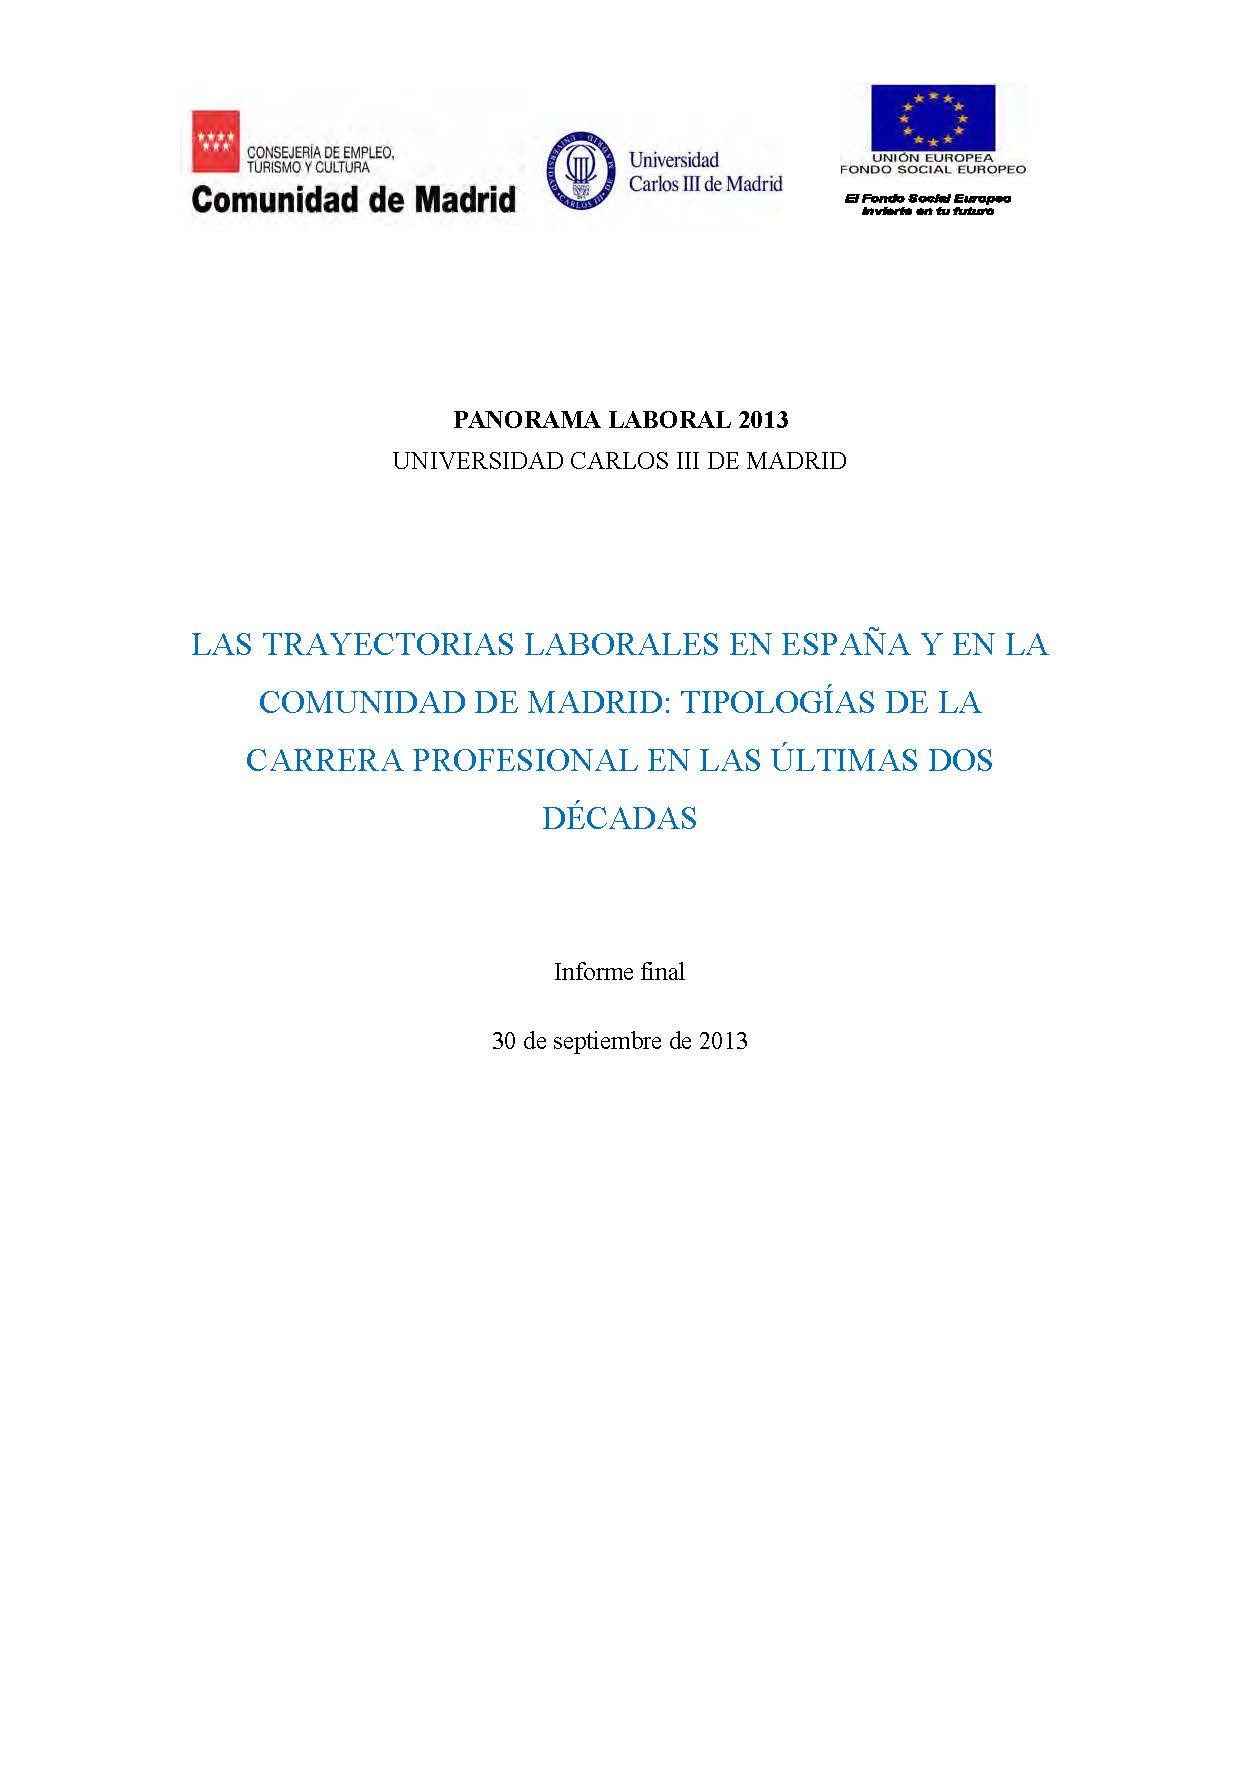 Portada de Panorama Laboral 2013 Las trayectorias laborales en España y en la Comunidad de Madrid tipologías de la carrera profesional en las últimas dos décadas. 